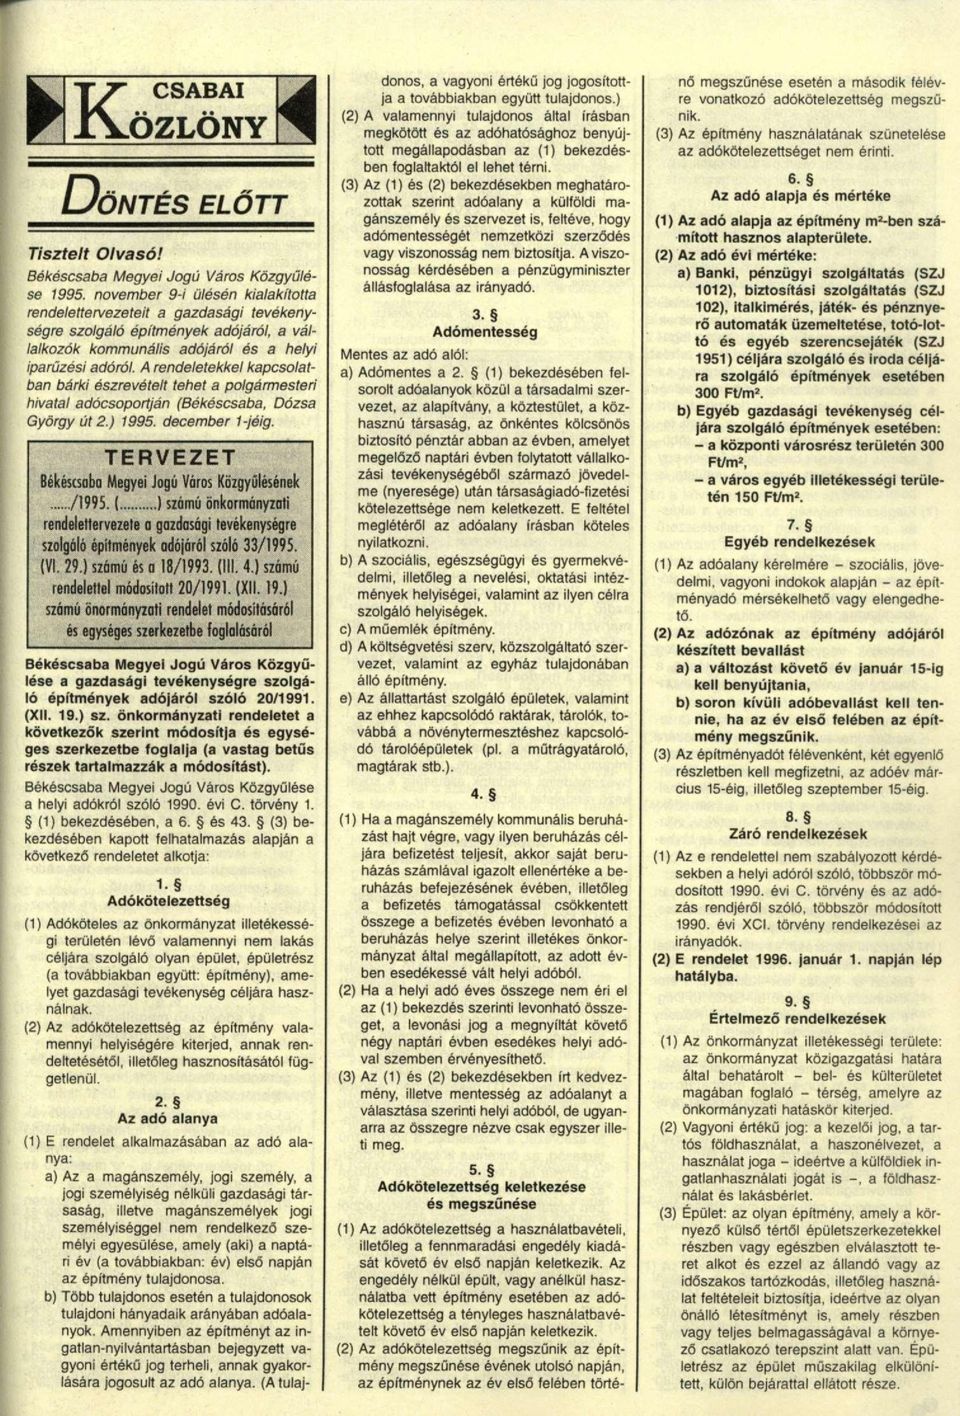 A rendeletekkel kapcsolatban bárki észrevételt tehet a polgármesteri hivatal adócsopodján (Békéscsaba, Dózsa György út 2.) 1995. december 1-jéig.